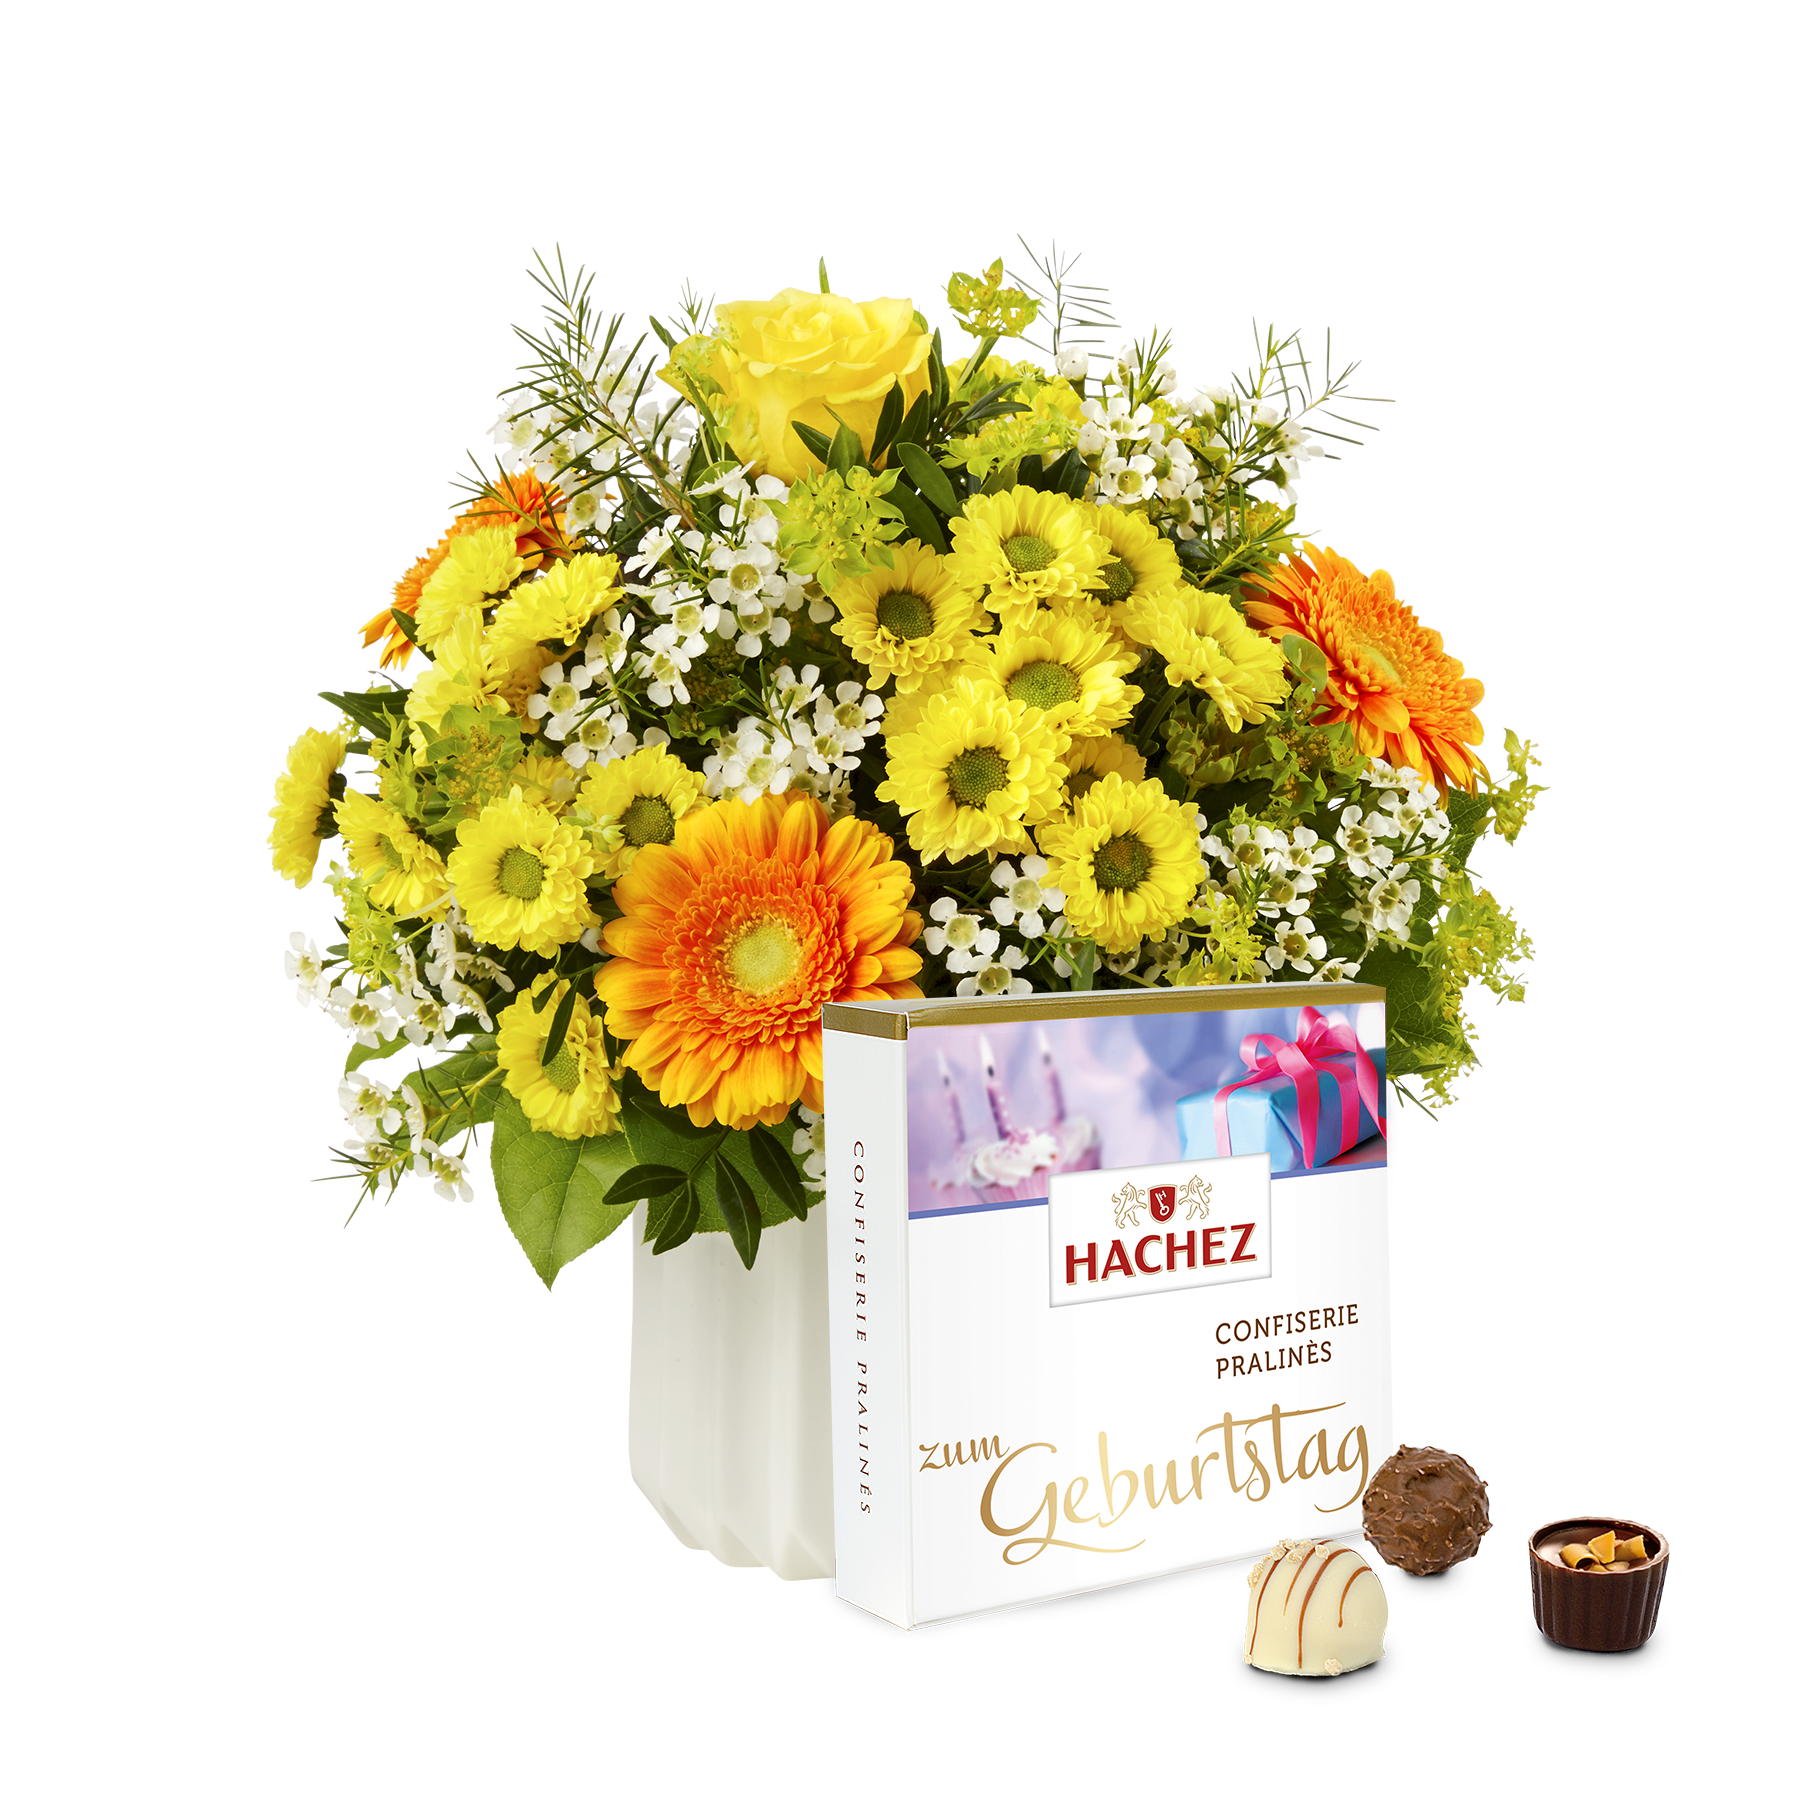 Blumenstrauß Geburtstagsüberraschung mit Hachez Pralinen Zum Geburtstag von  bestellen